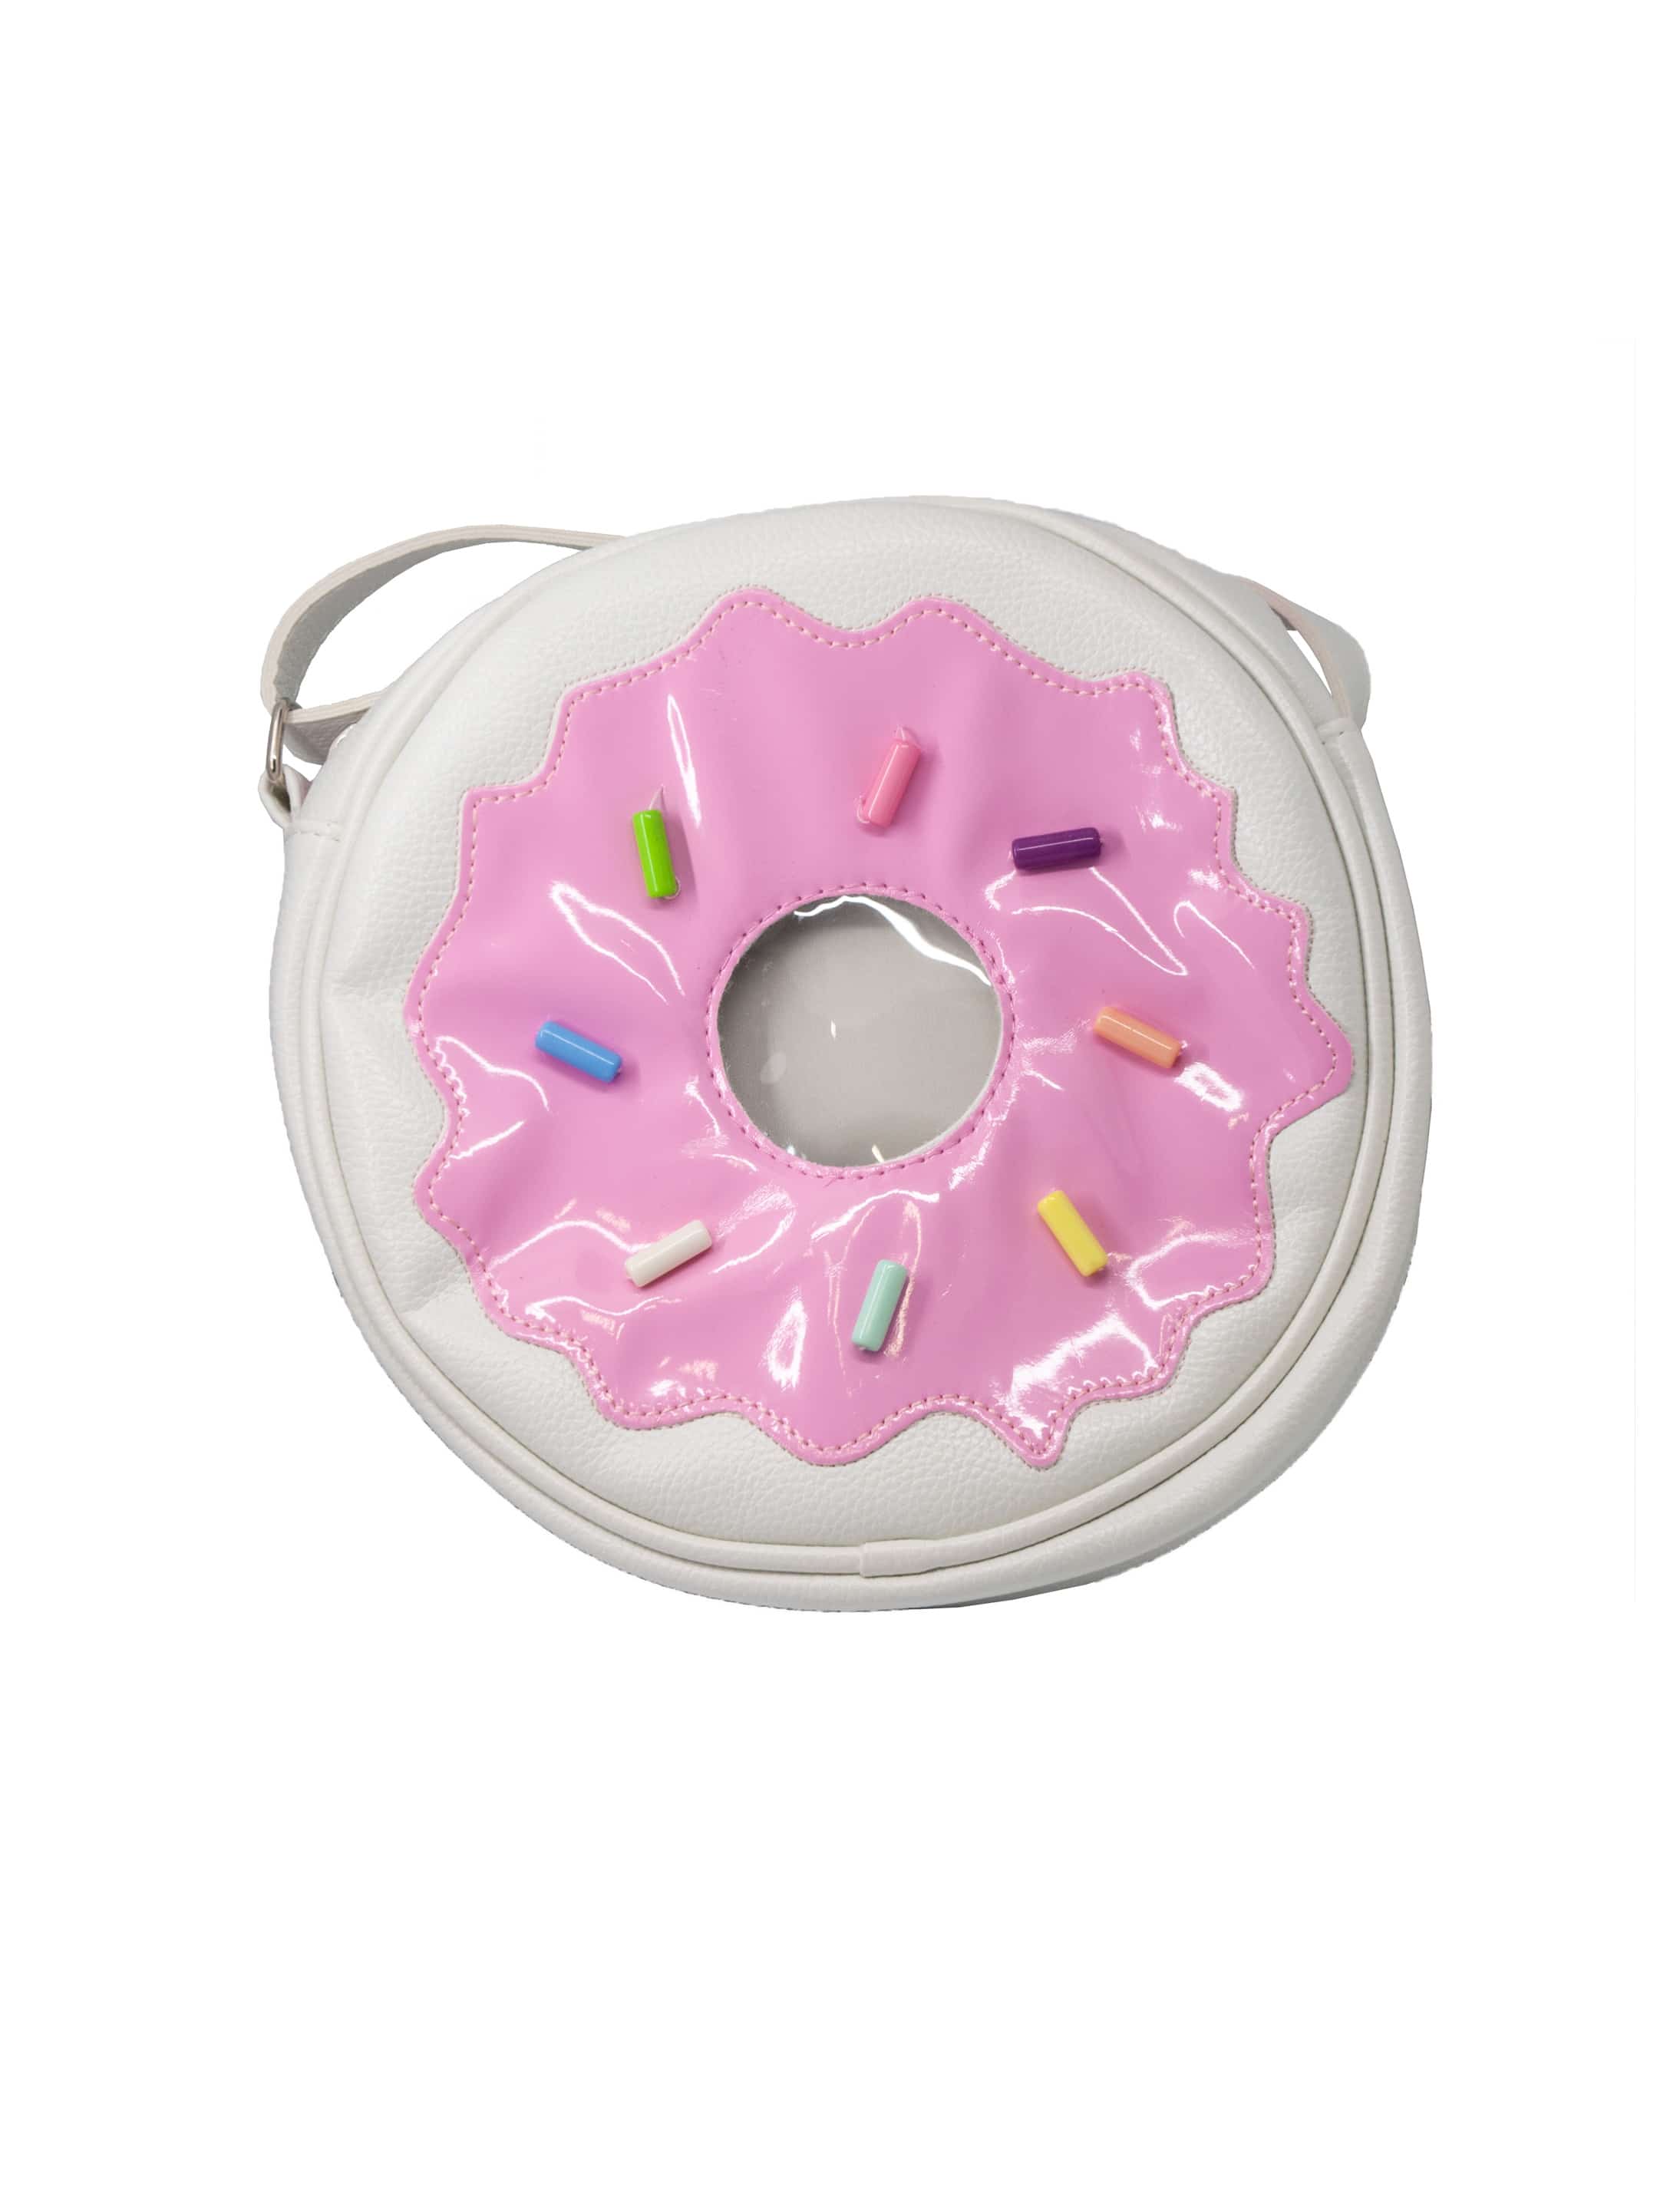 Tasche Candy Donut rosa/weiß